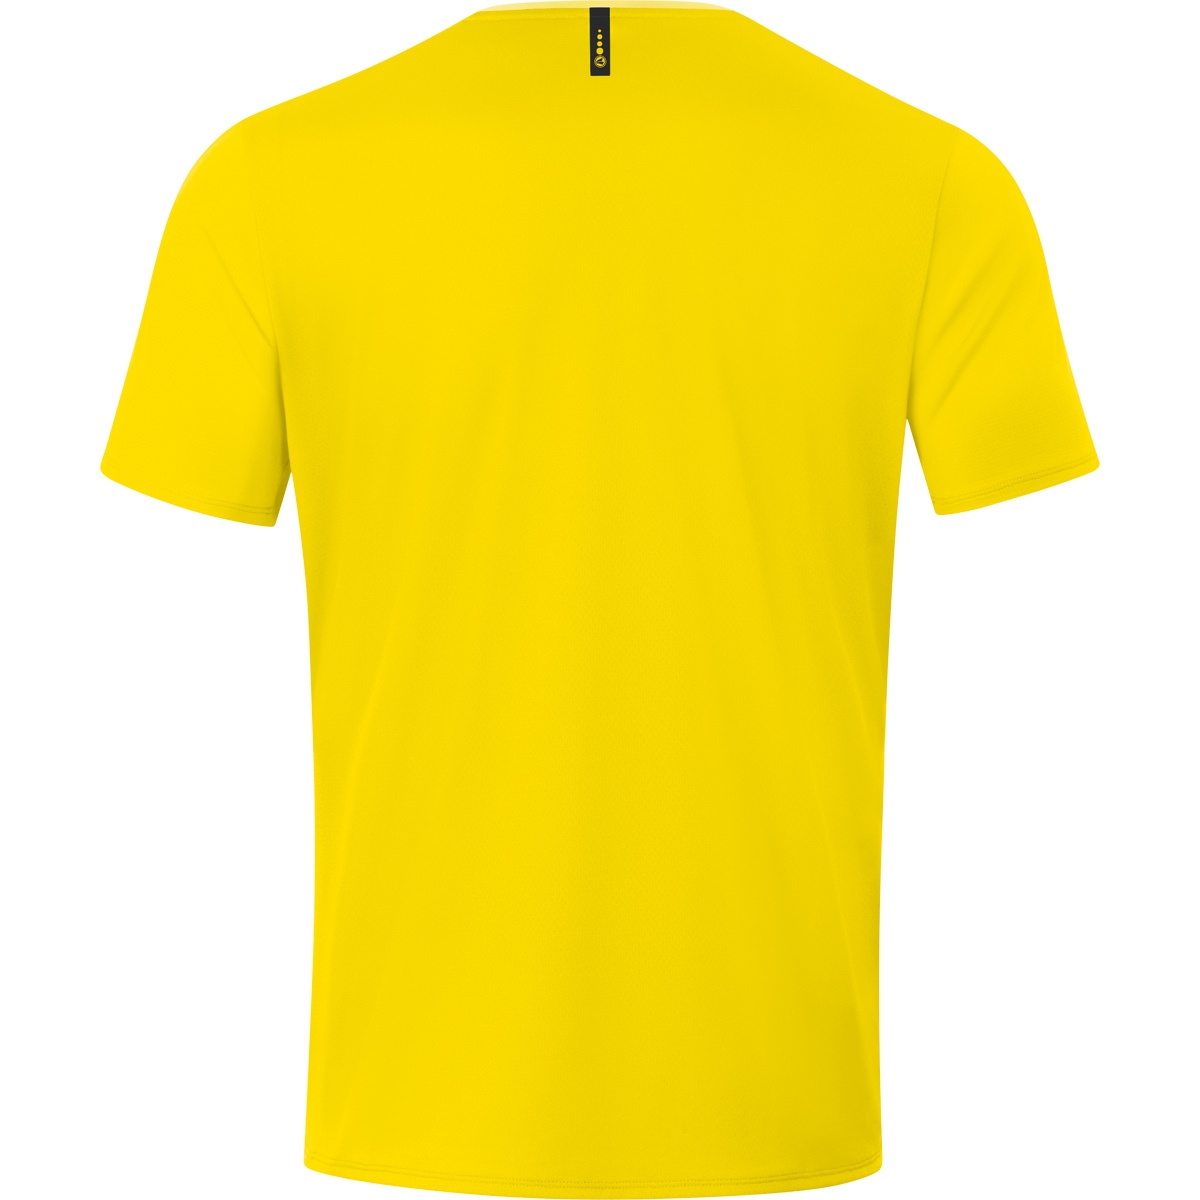 Gr. 2.0 6120 3XL, Champ T-Shirt JAKO citro/citro light, Herren,